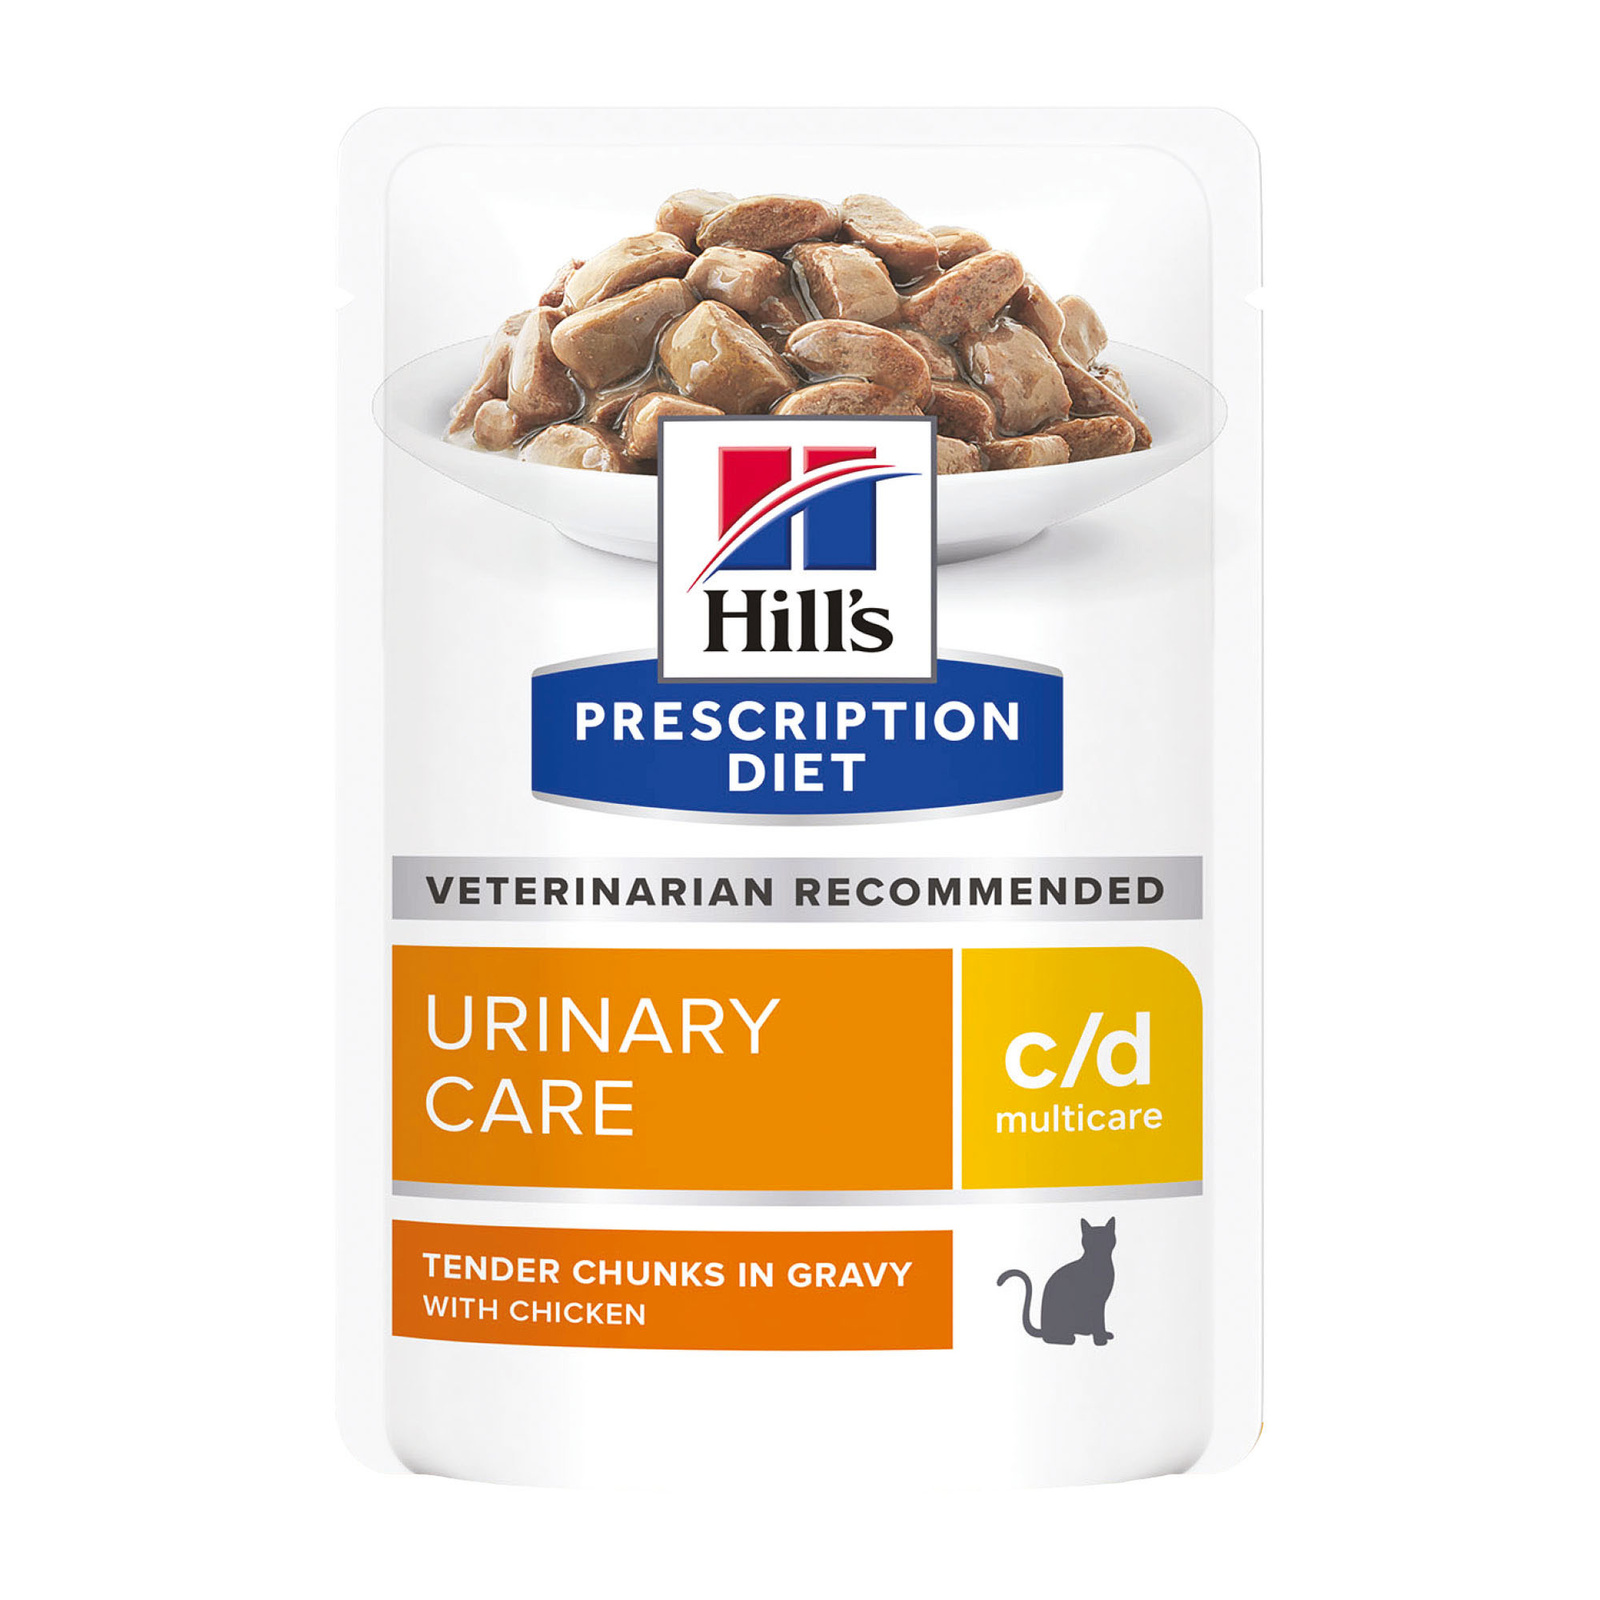 Hill's вет.консервы Hill's вет.консервы prescription Diet c/d Multicare Urinary Care, влажный диетический корм для кошек при профилактике мочекаменной болезни (МКБ), с курицей (85 г)